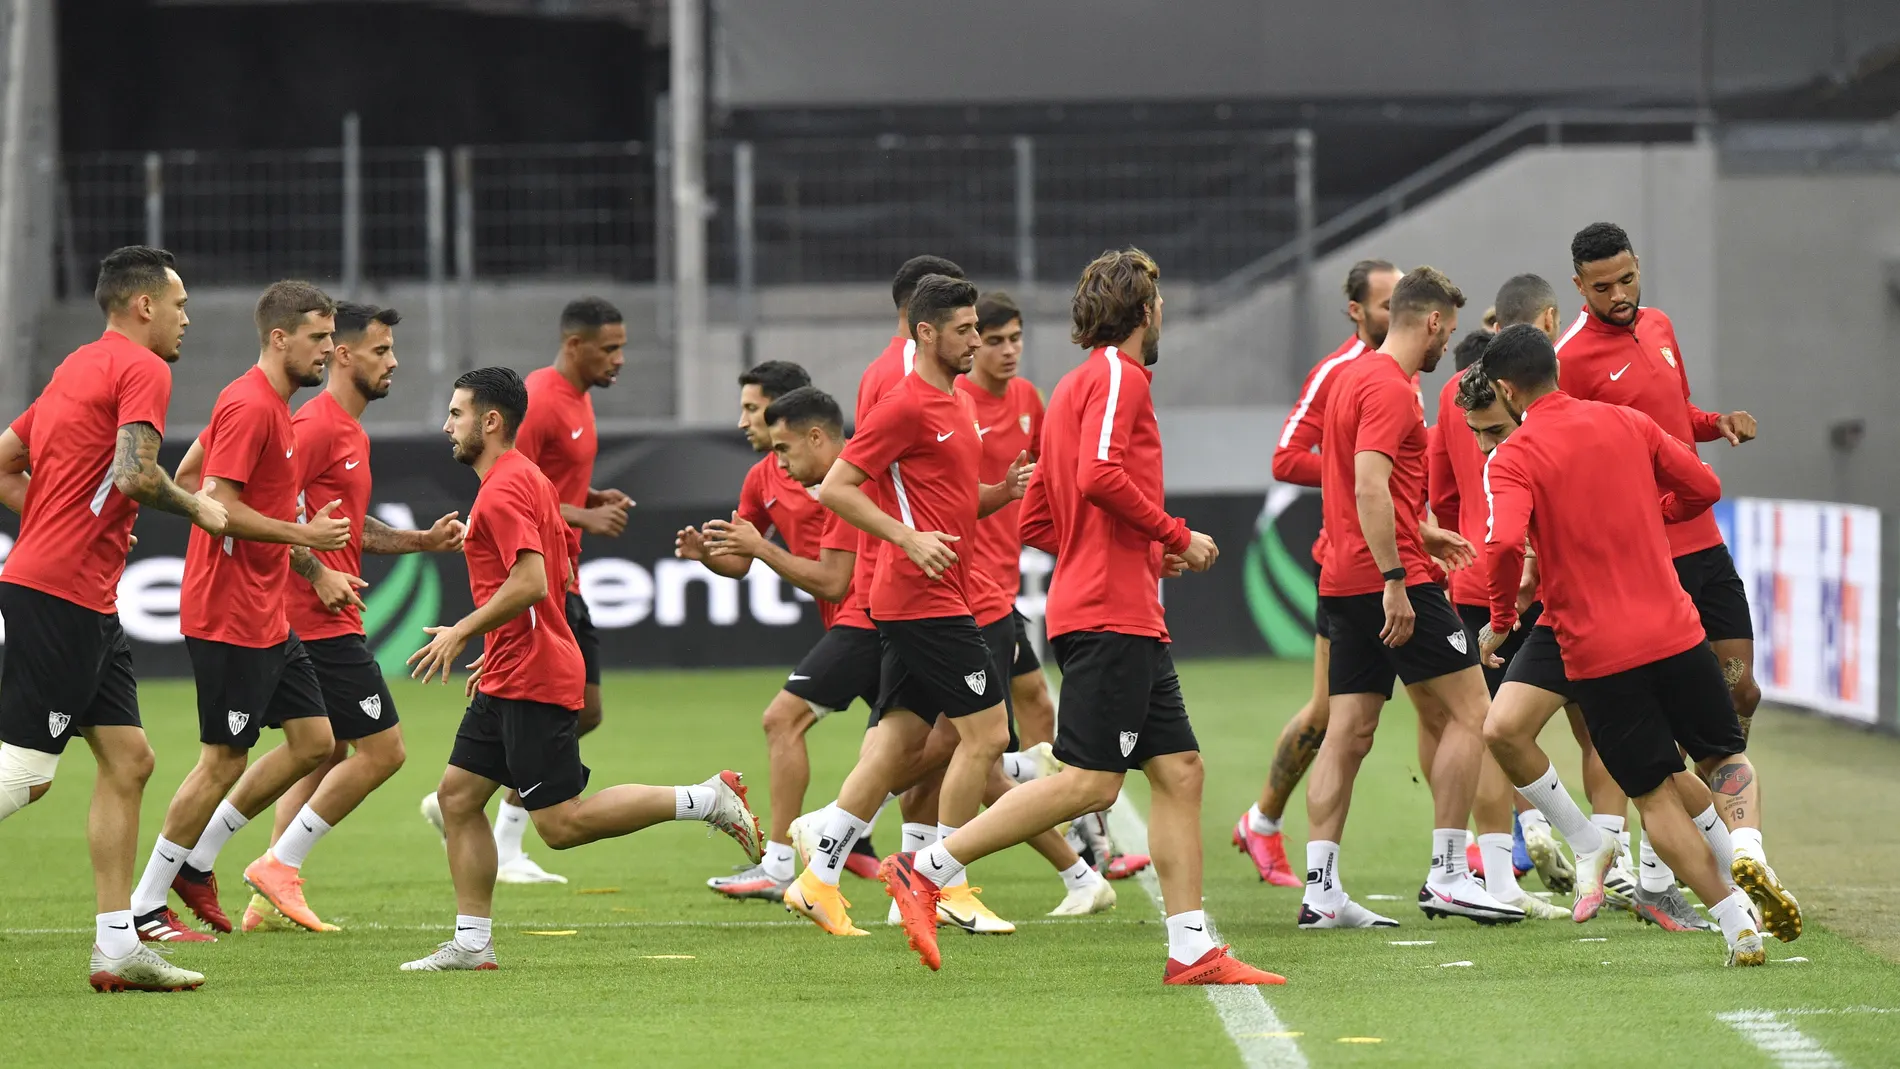 Sevilla training session